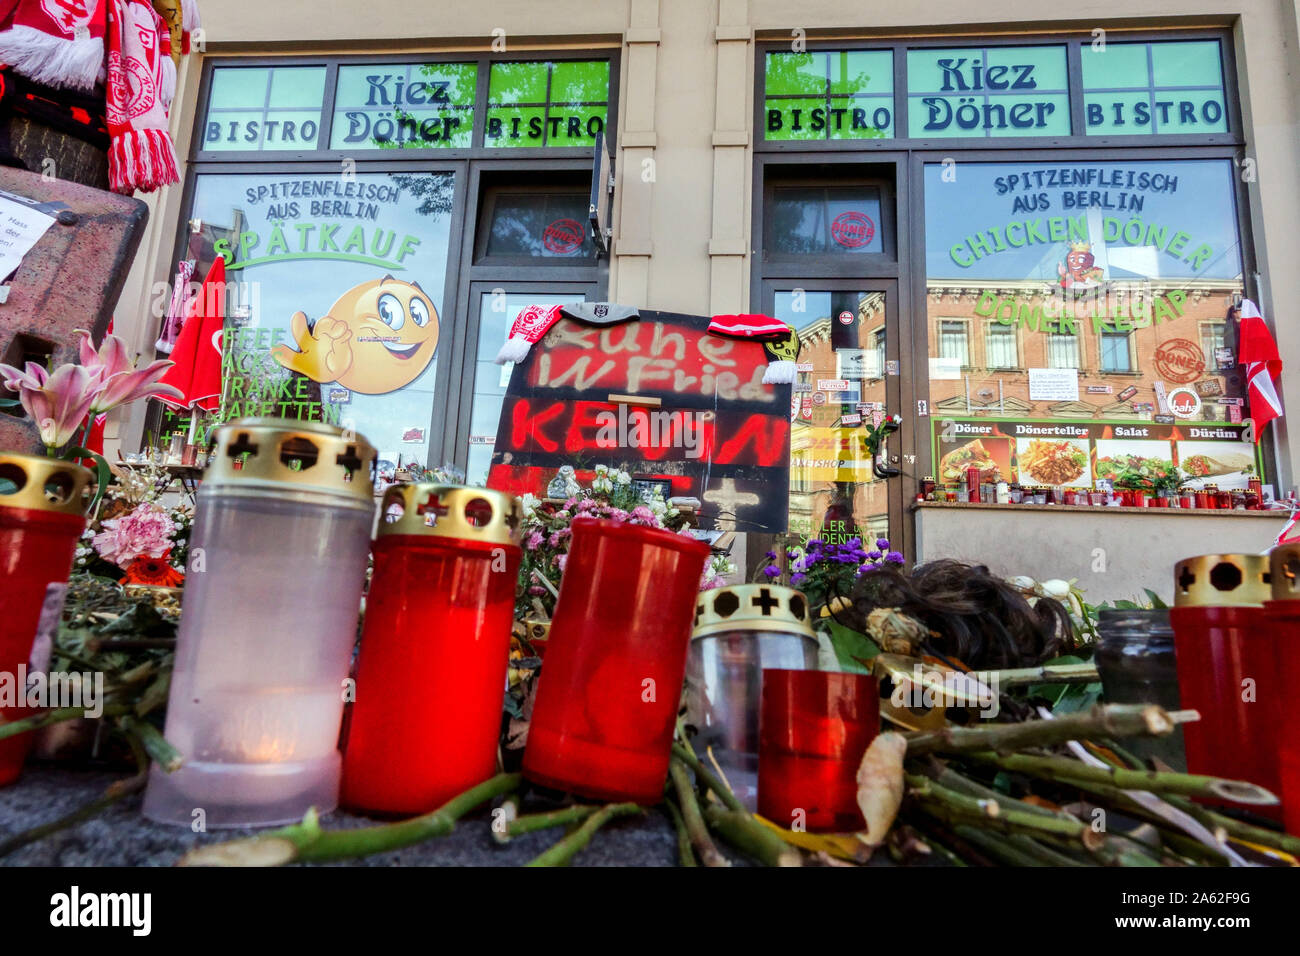 Halle (Saale) Deutschland Angriff Fast food Ort, wo man der Opfer getötet wurde, Kevin S, Blumen Kerzen Speicher Stockfoto